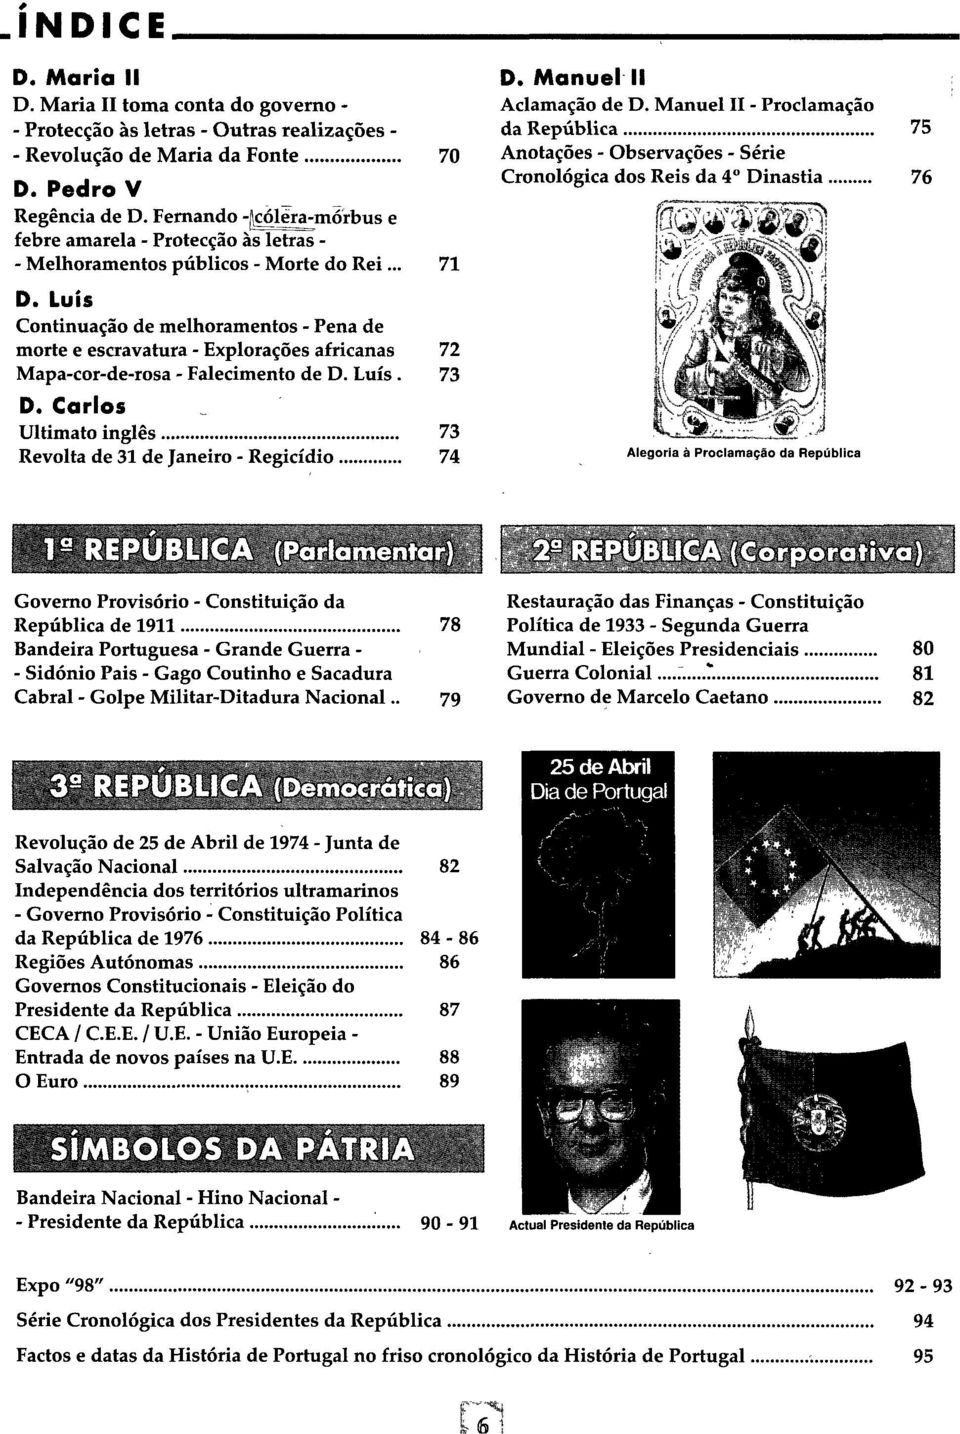 Luís Continuação de melhoramentos - Pena de morte e escravatura - Explorações africanas 72 Mapa-cor-de-rosa - Falecimento de D. Luís. 73 D.